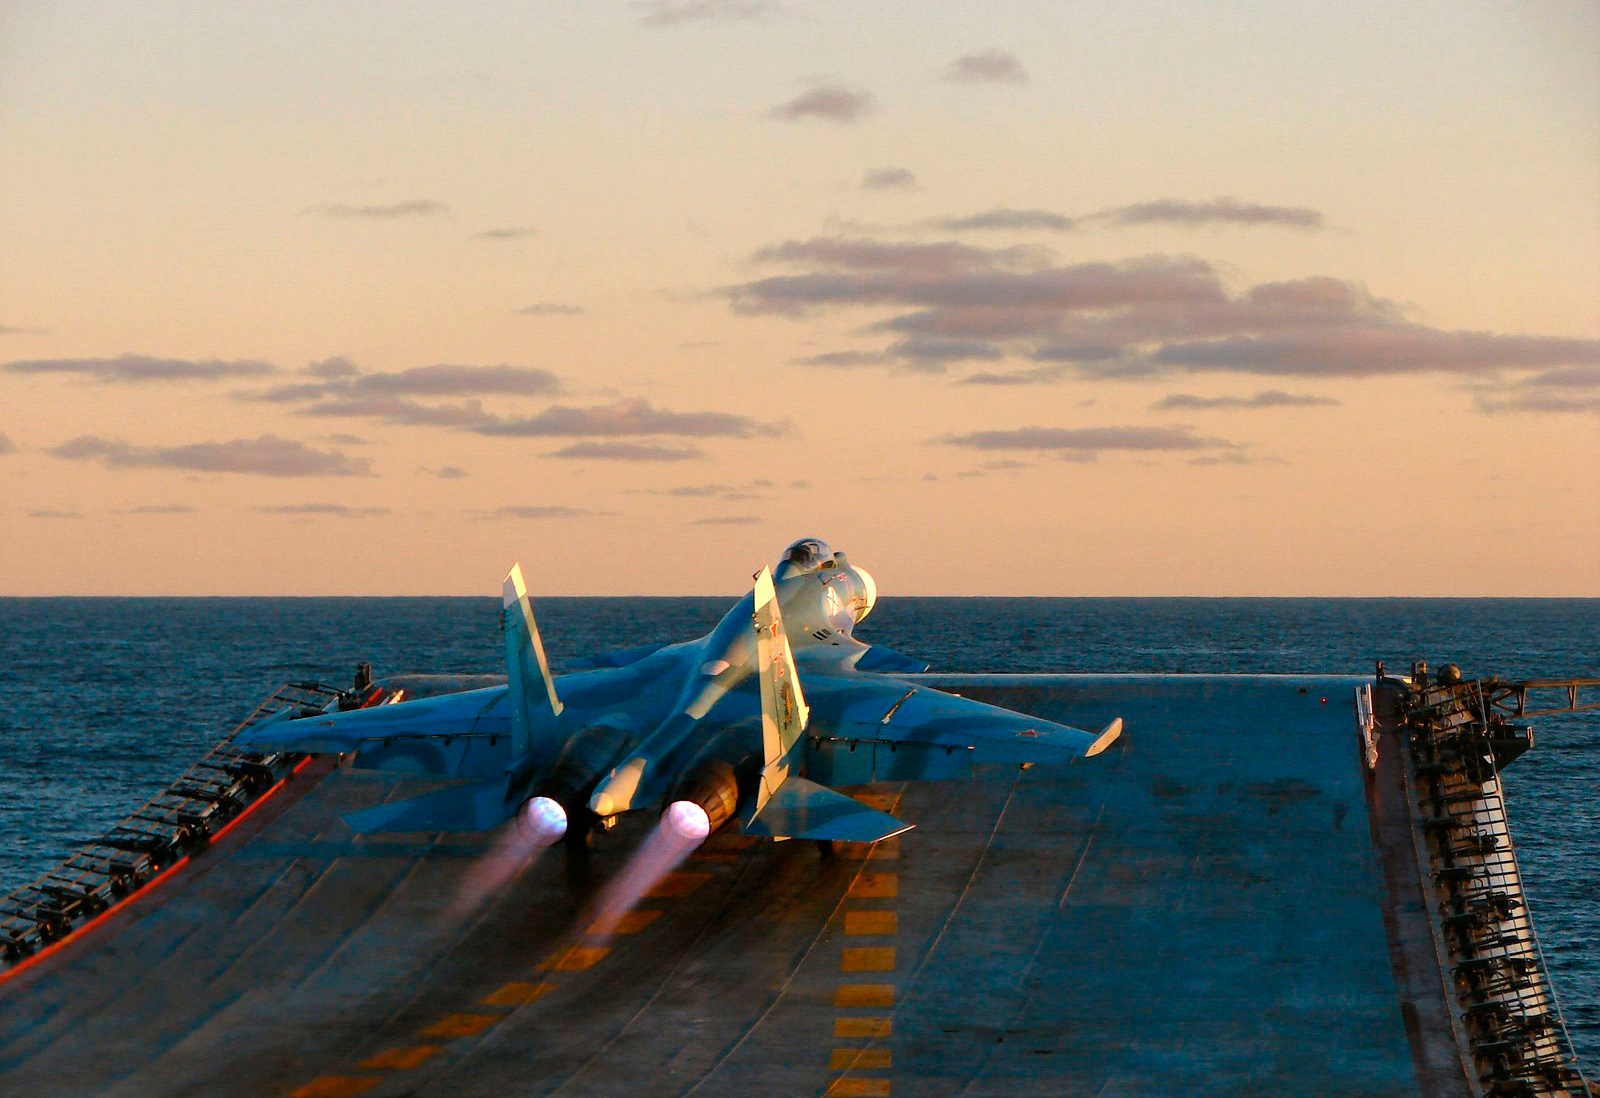 Caças do porta-aviões russo “Kuznetsov” dão início a operações de voo na costa da Síria